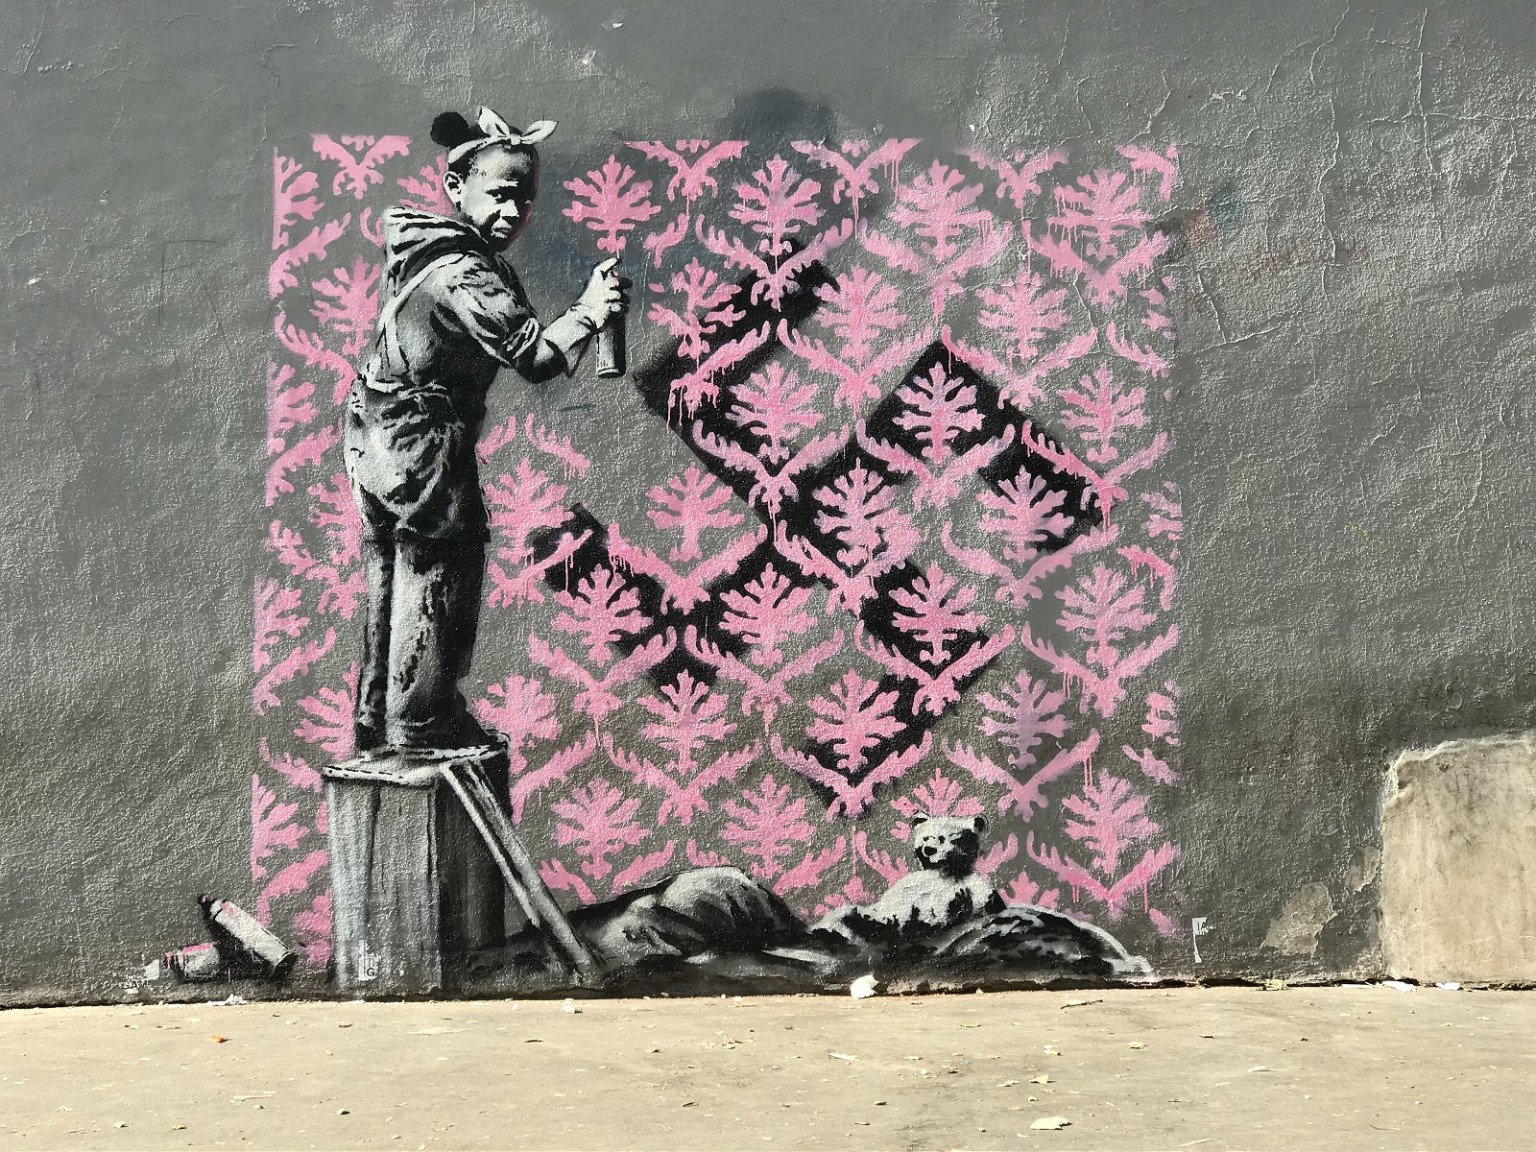 Cercasi Banksy disperatamente, un atlante sulle tracce dell’artista e delle opere in giro per il mondo